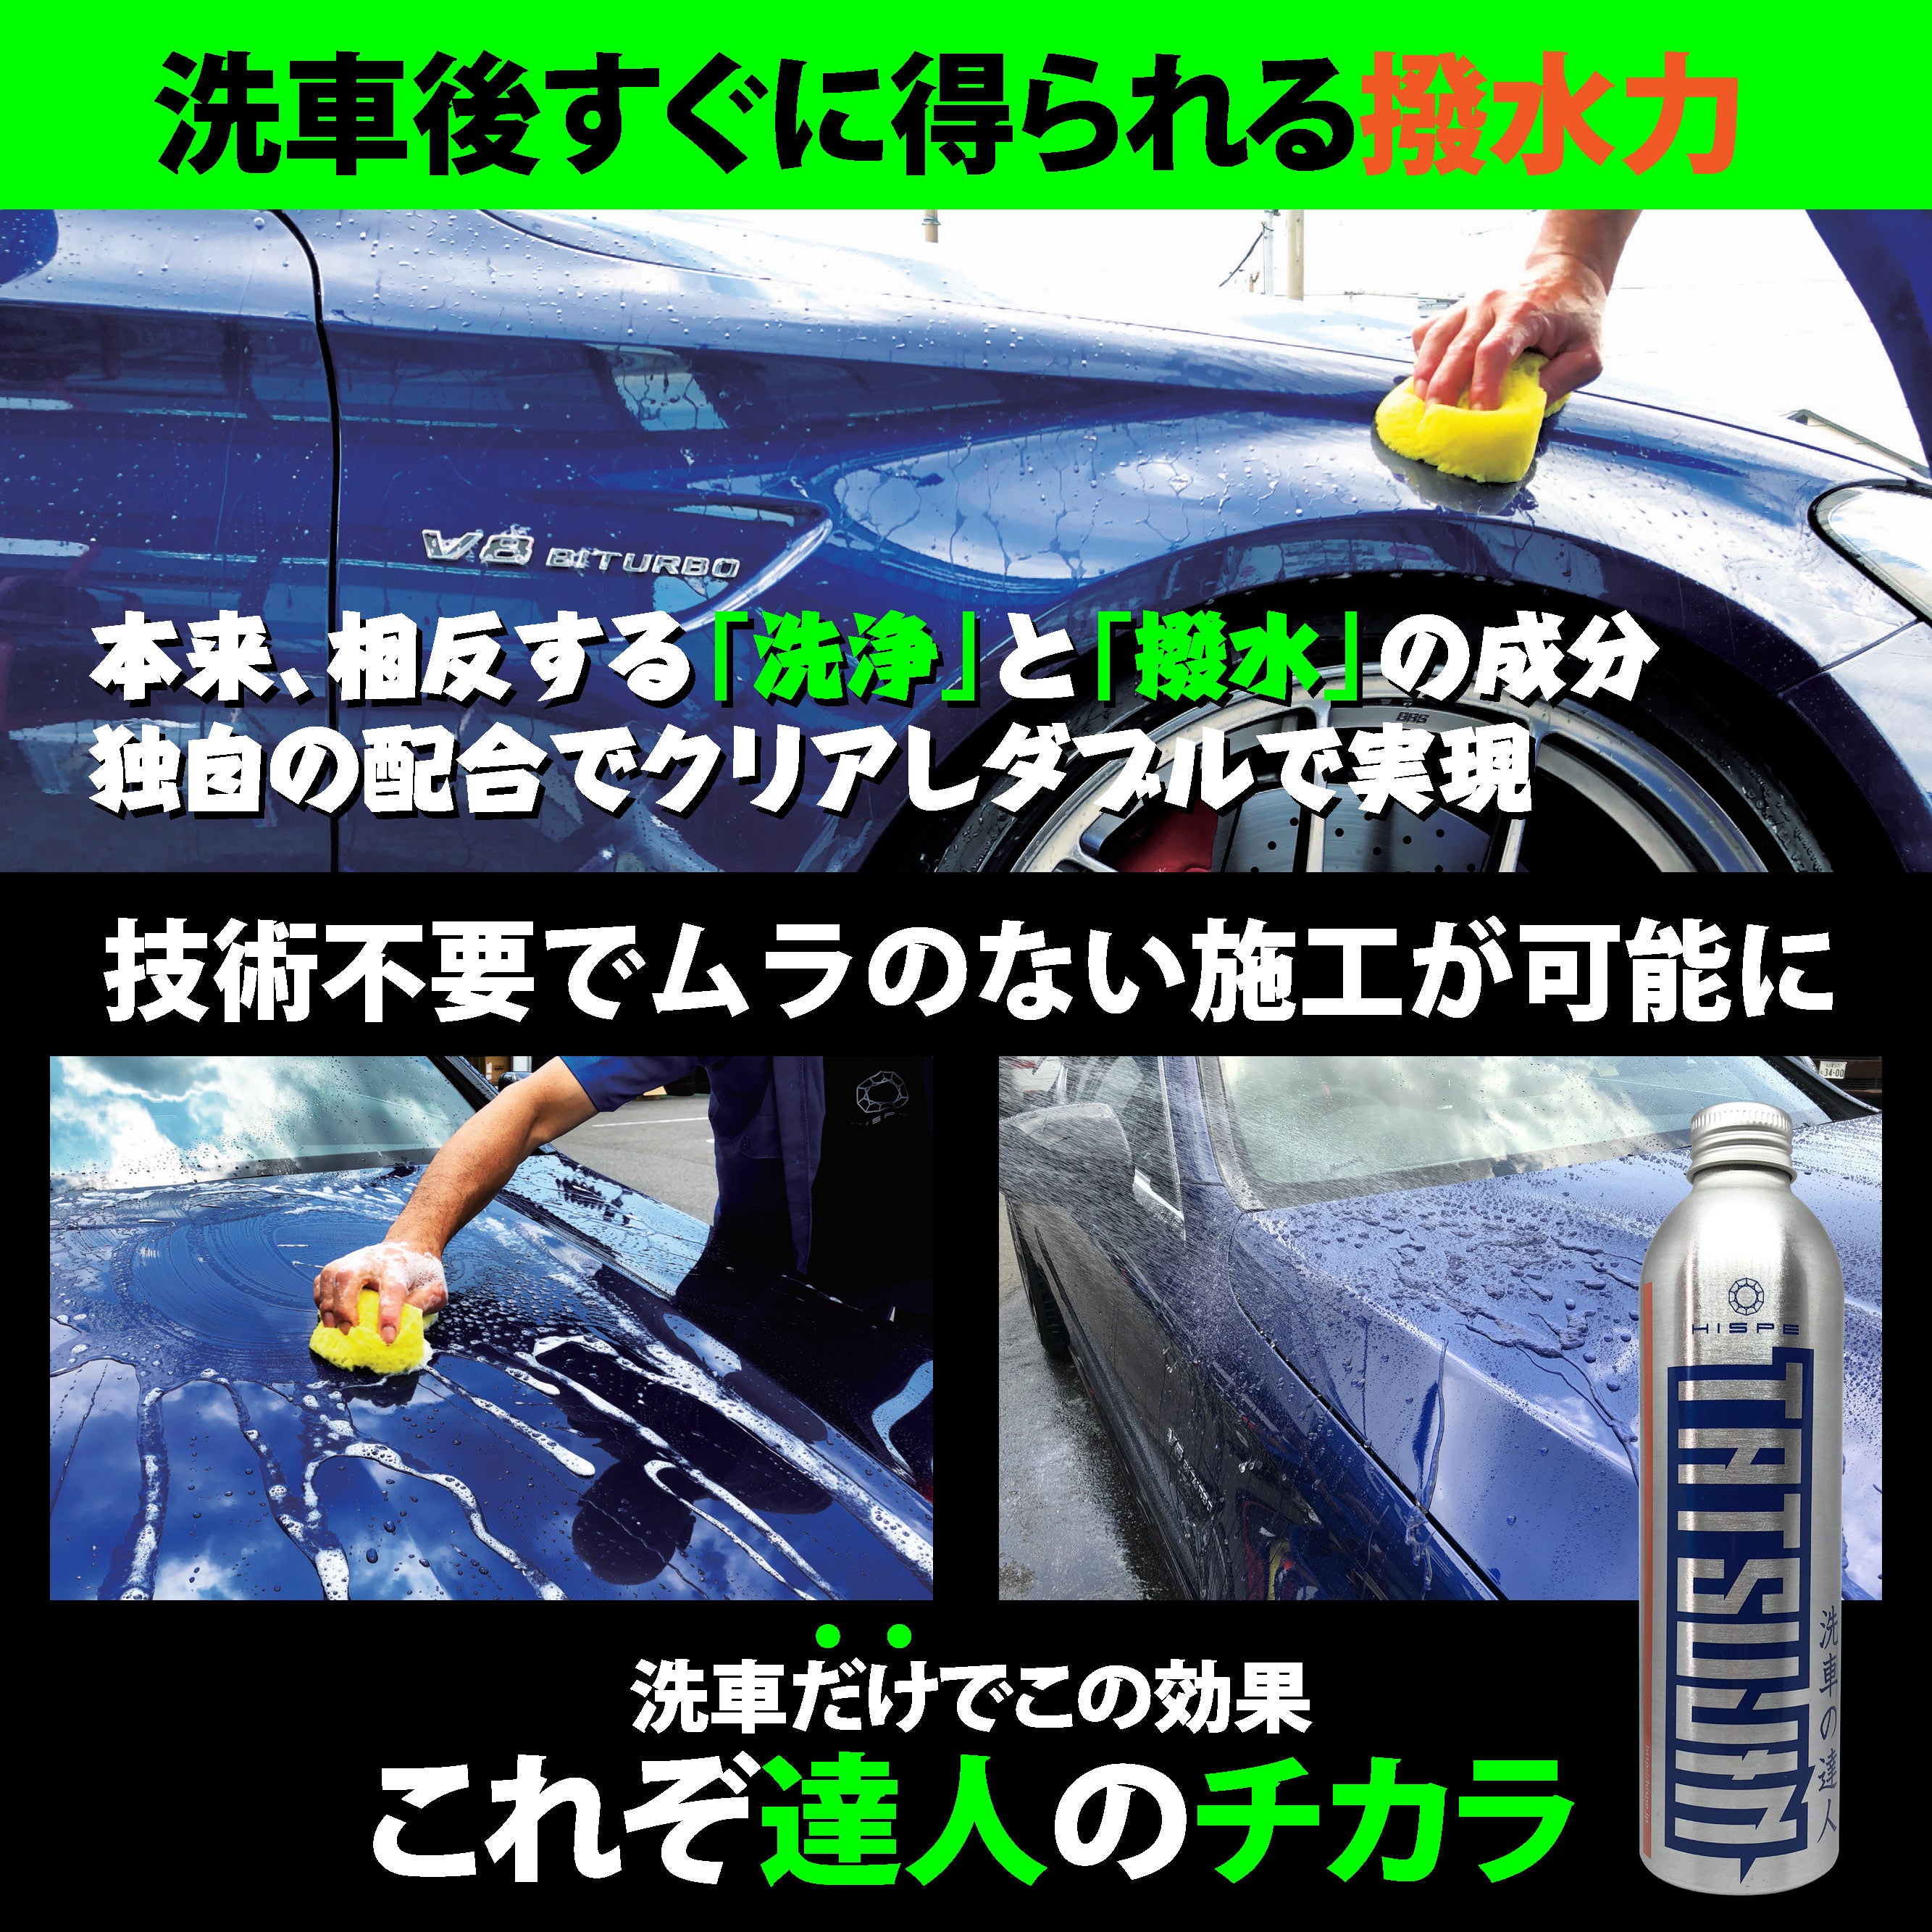 洗車の達人 【撥水シャンプー】250ml - HISPE official shop